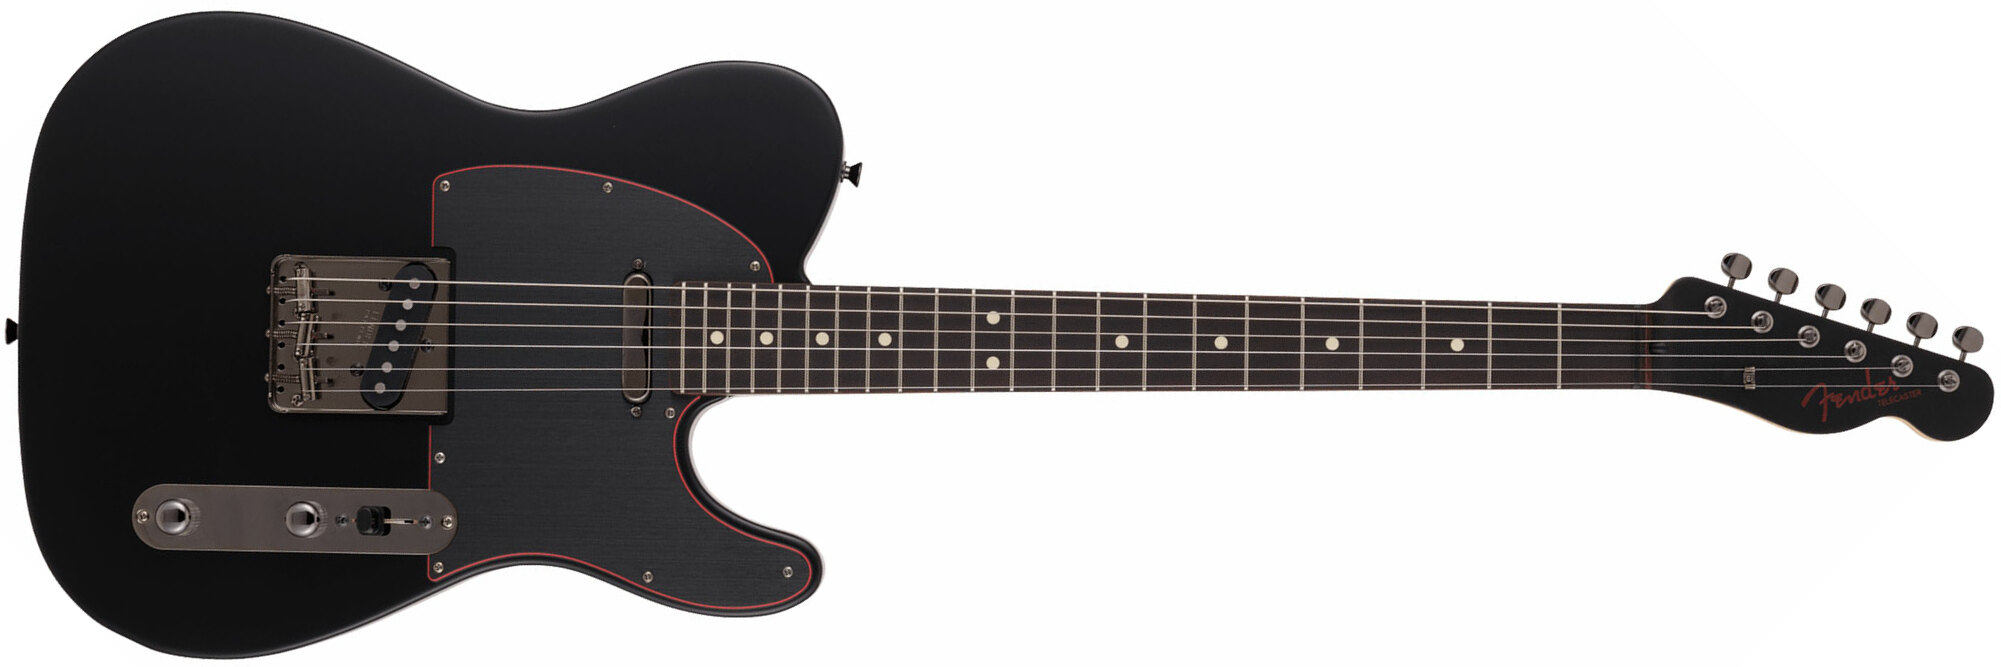 Fender Tele Hybrid Ii Jap 2s Ht Rw - Satin Black - Guitare Électrique Forme Tel - Main picture